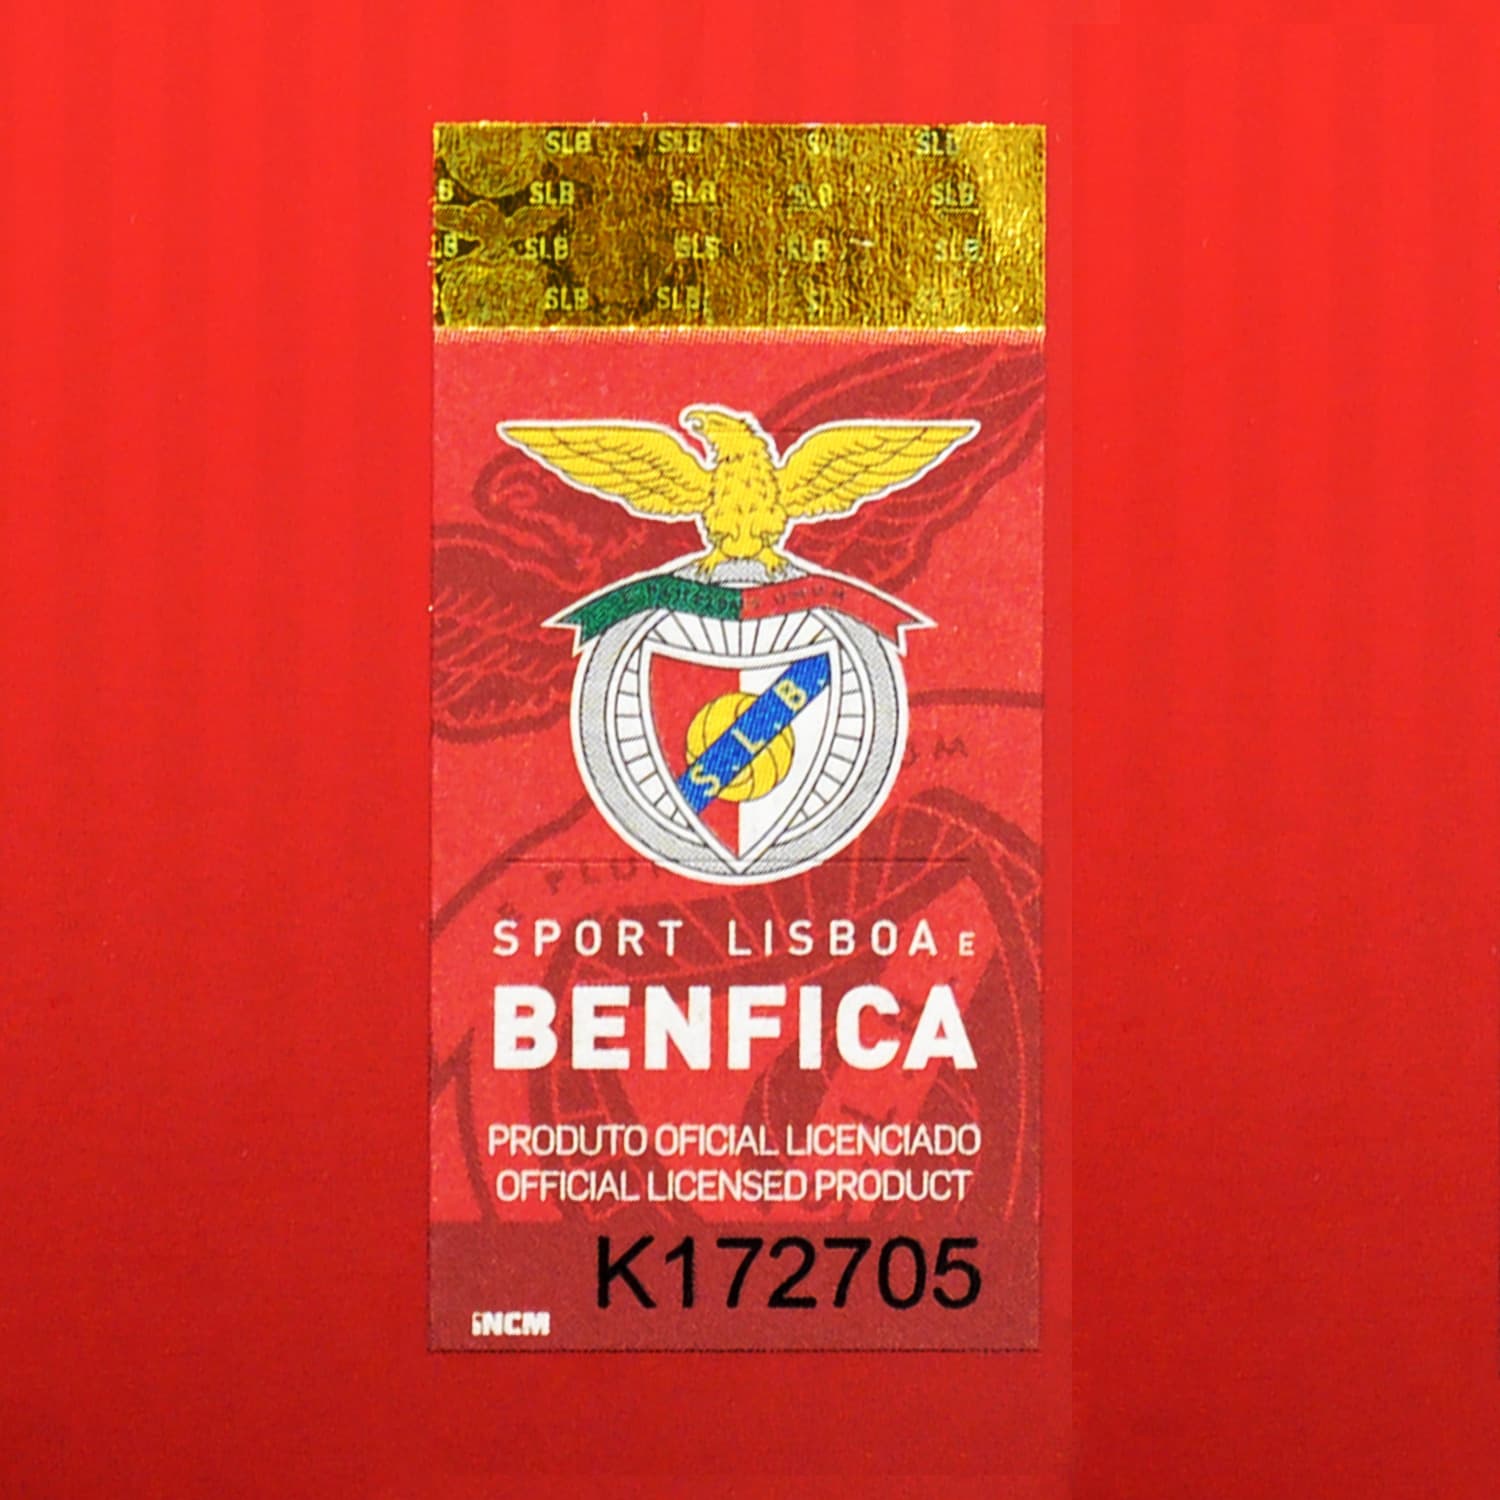 Benfica goalkeeper kit hologram